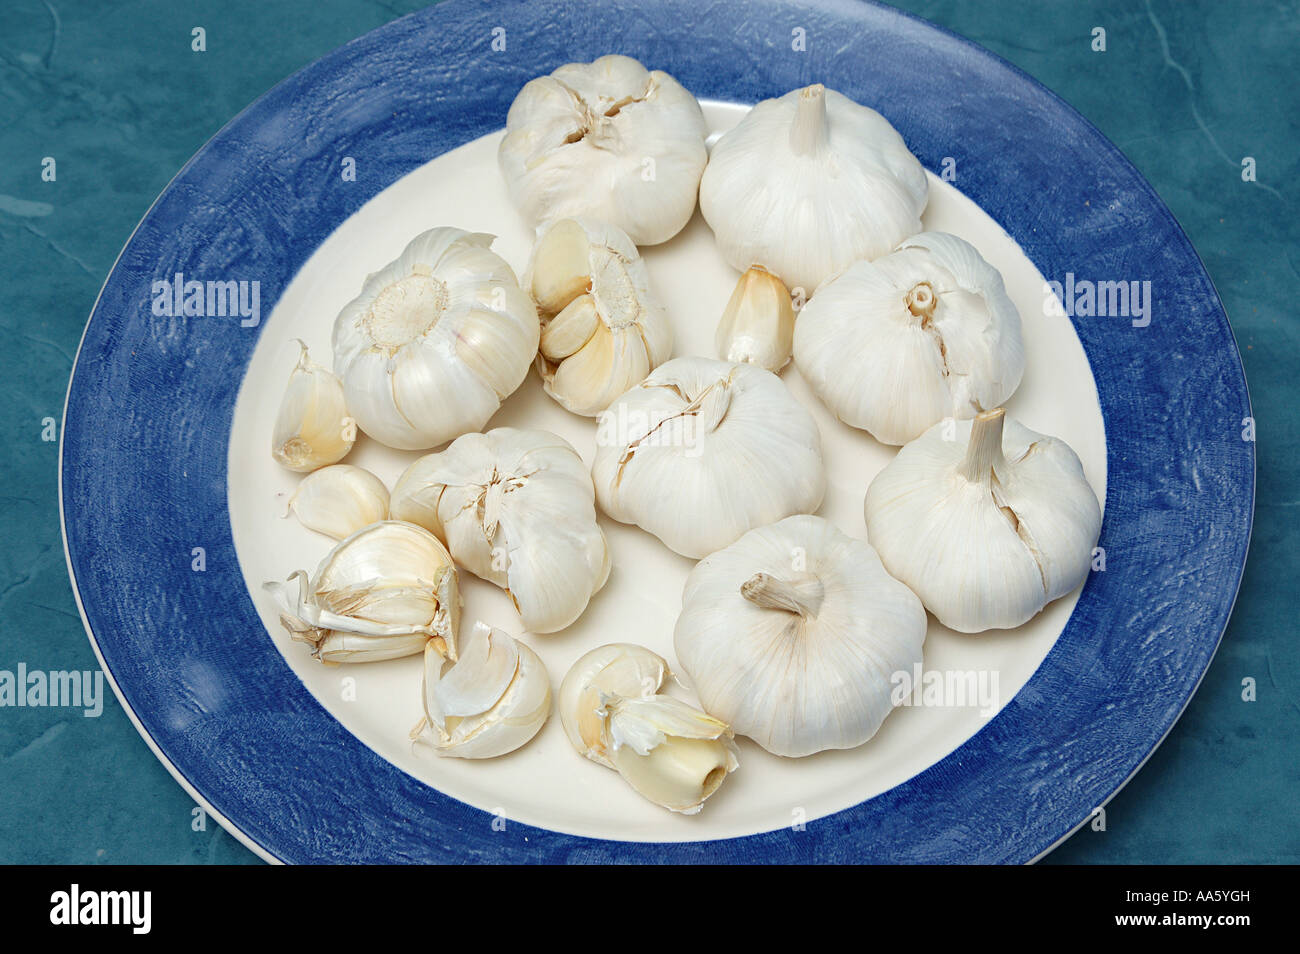 ANG103968 spezie molti aglio bulbo mantenuto sulla piastra bianca Foto Stock